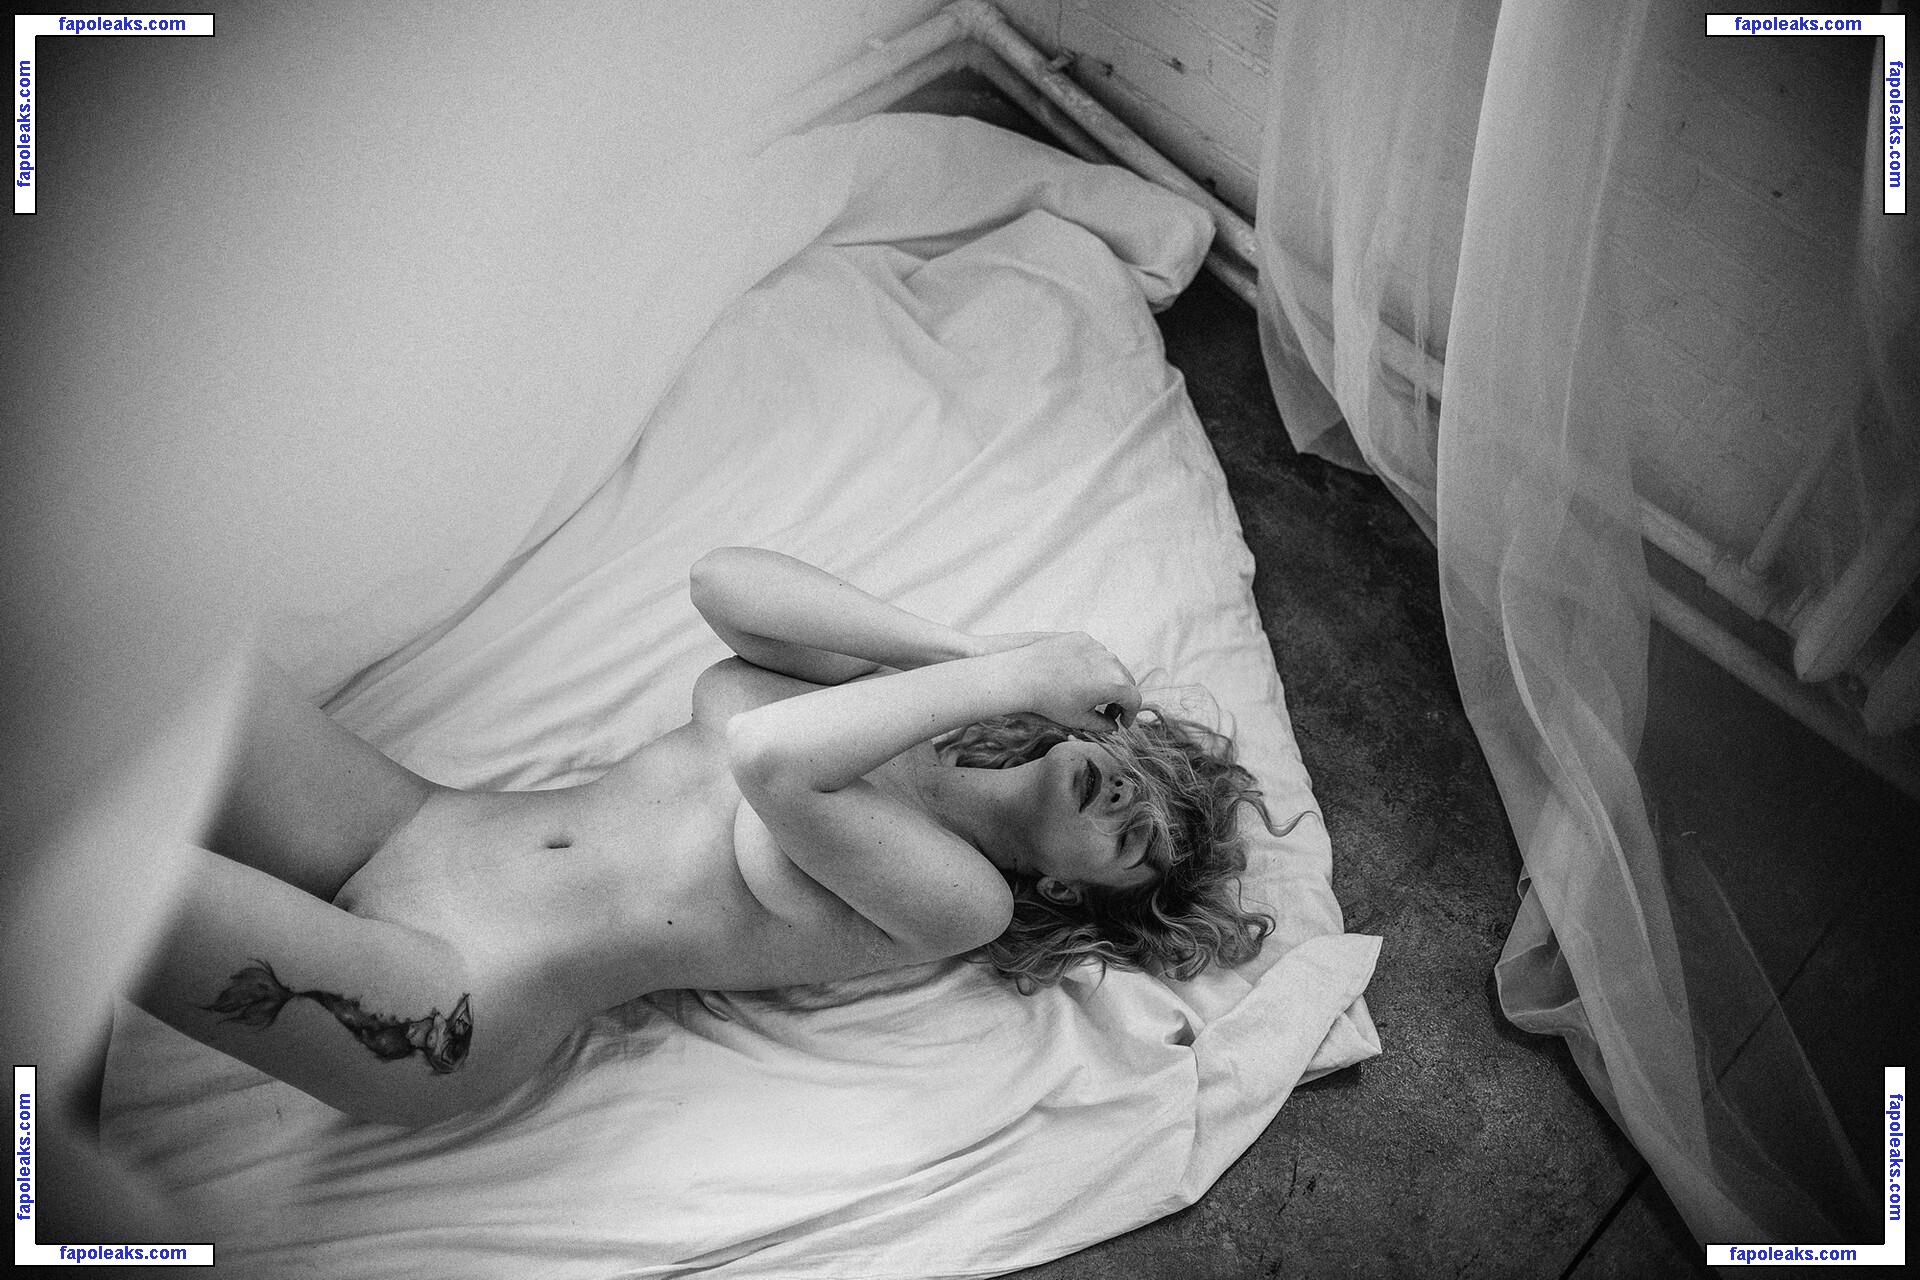 Natali Tihomirova / natalia__tihomirovafanpage99 / tihomirovanatalia nude photo #0225 from OnlyFans